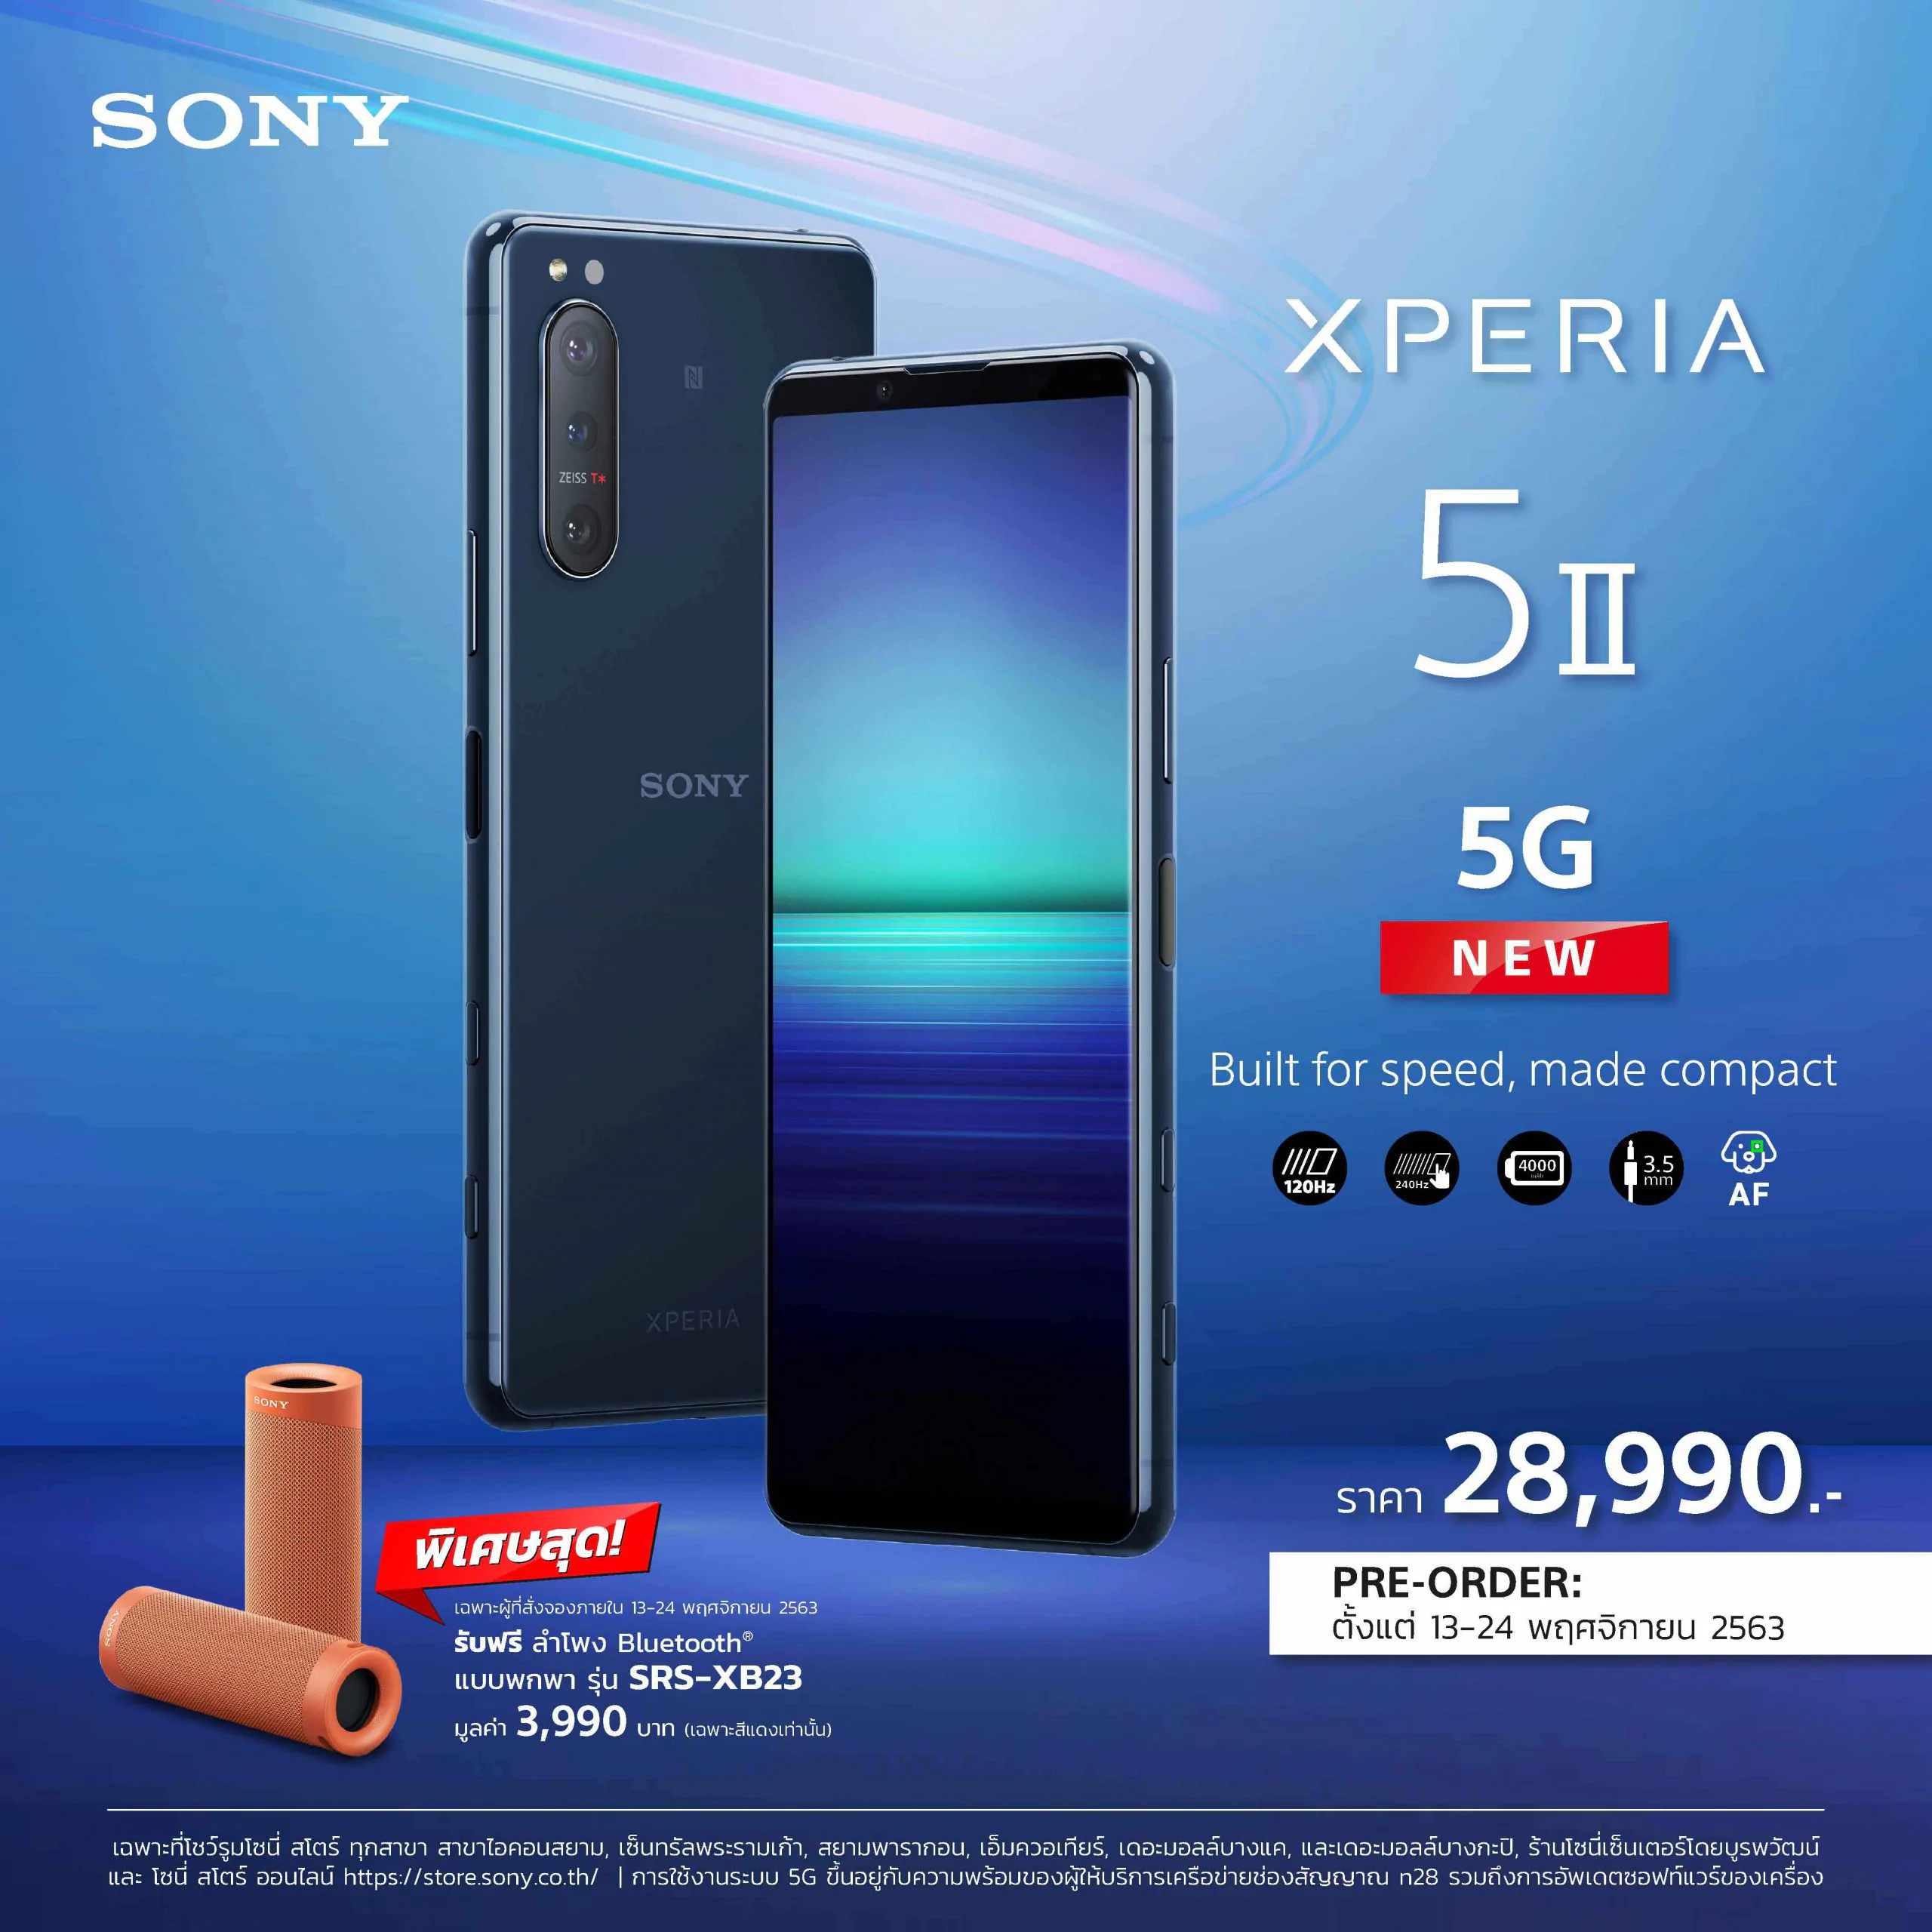 Pic Xperia 5 II Pre Booking 1 scaled | Sony‬ | Sony ประเทศไทยวางจำหน่าย Xperia 5 II เรือธงสุดล้ำในราคา 28,990 บาท